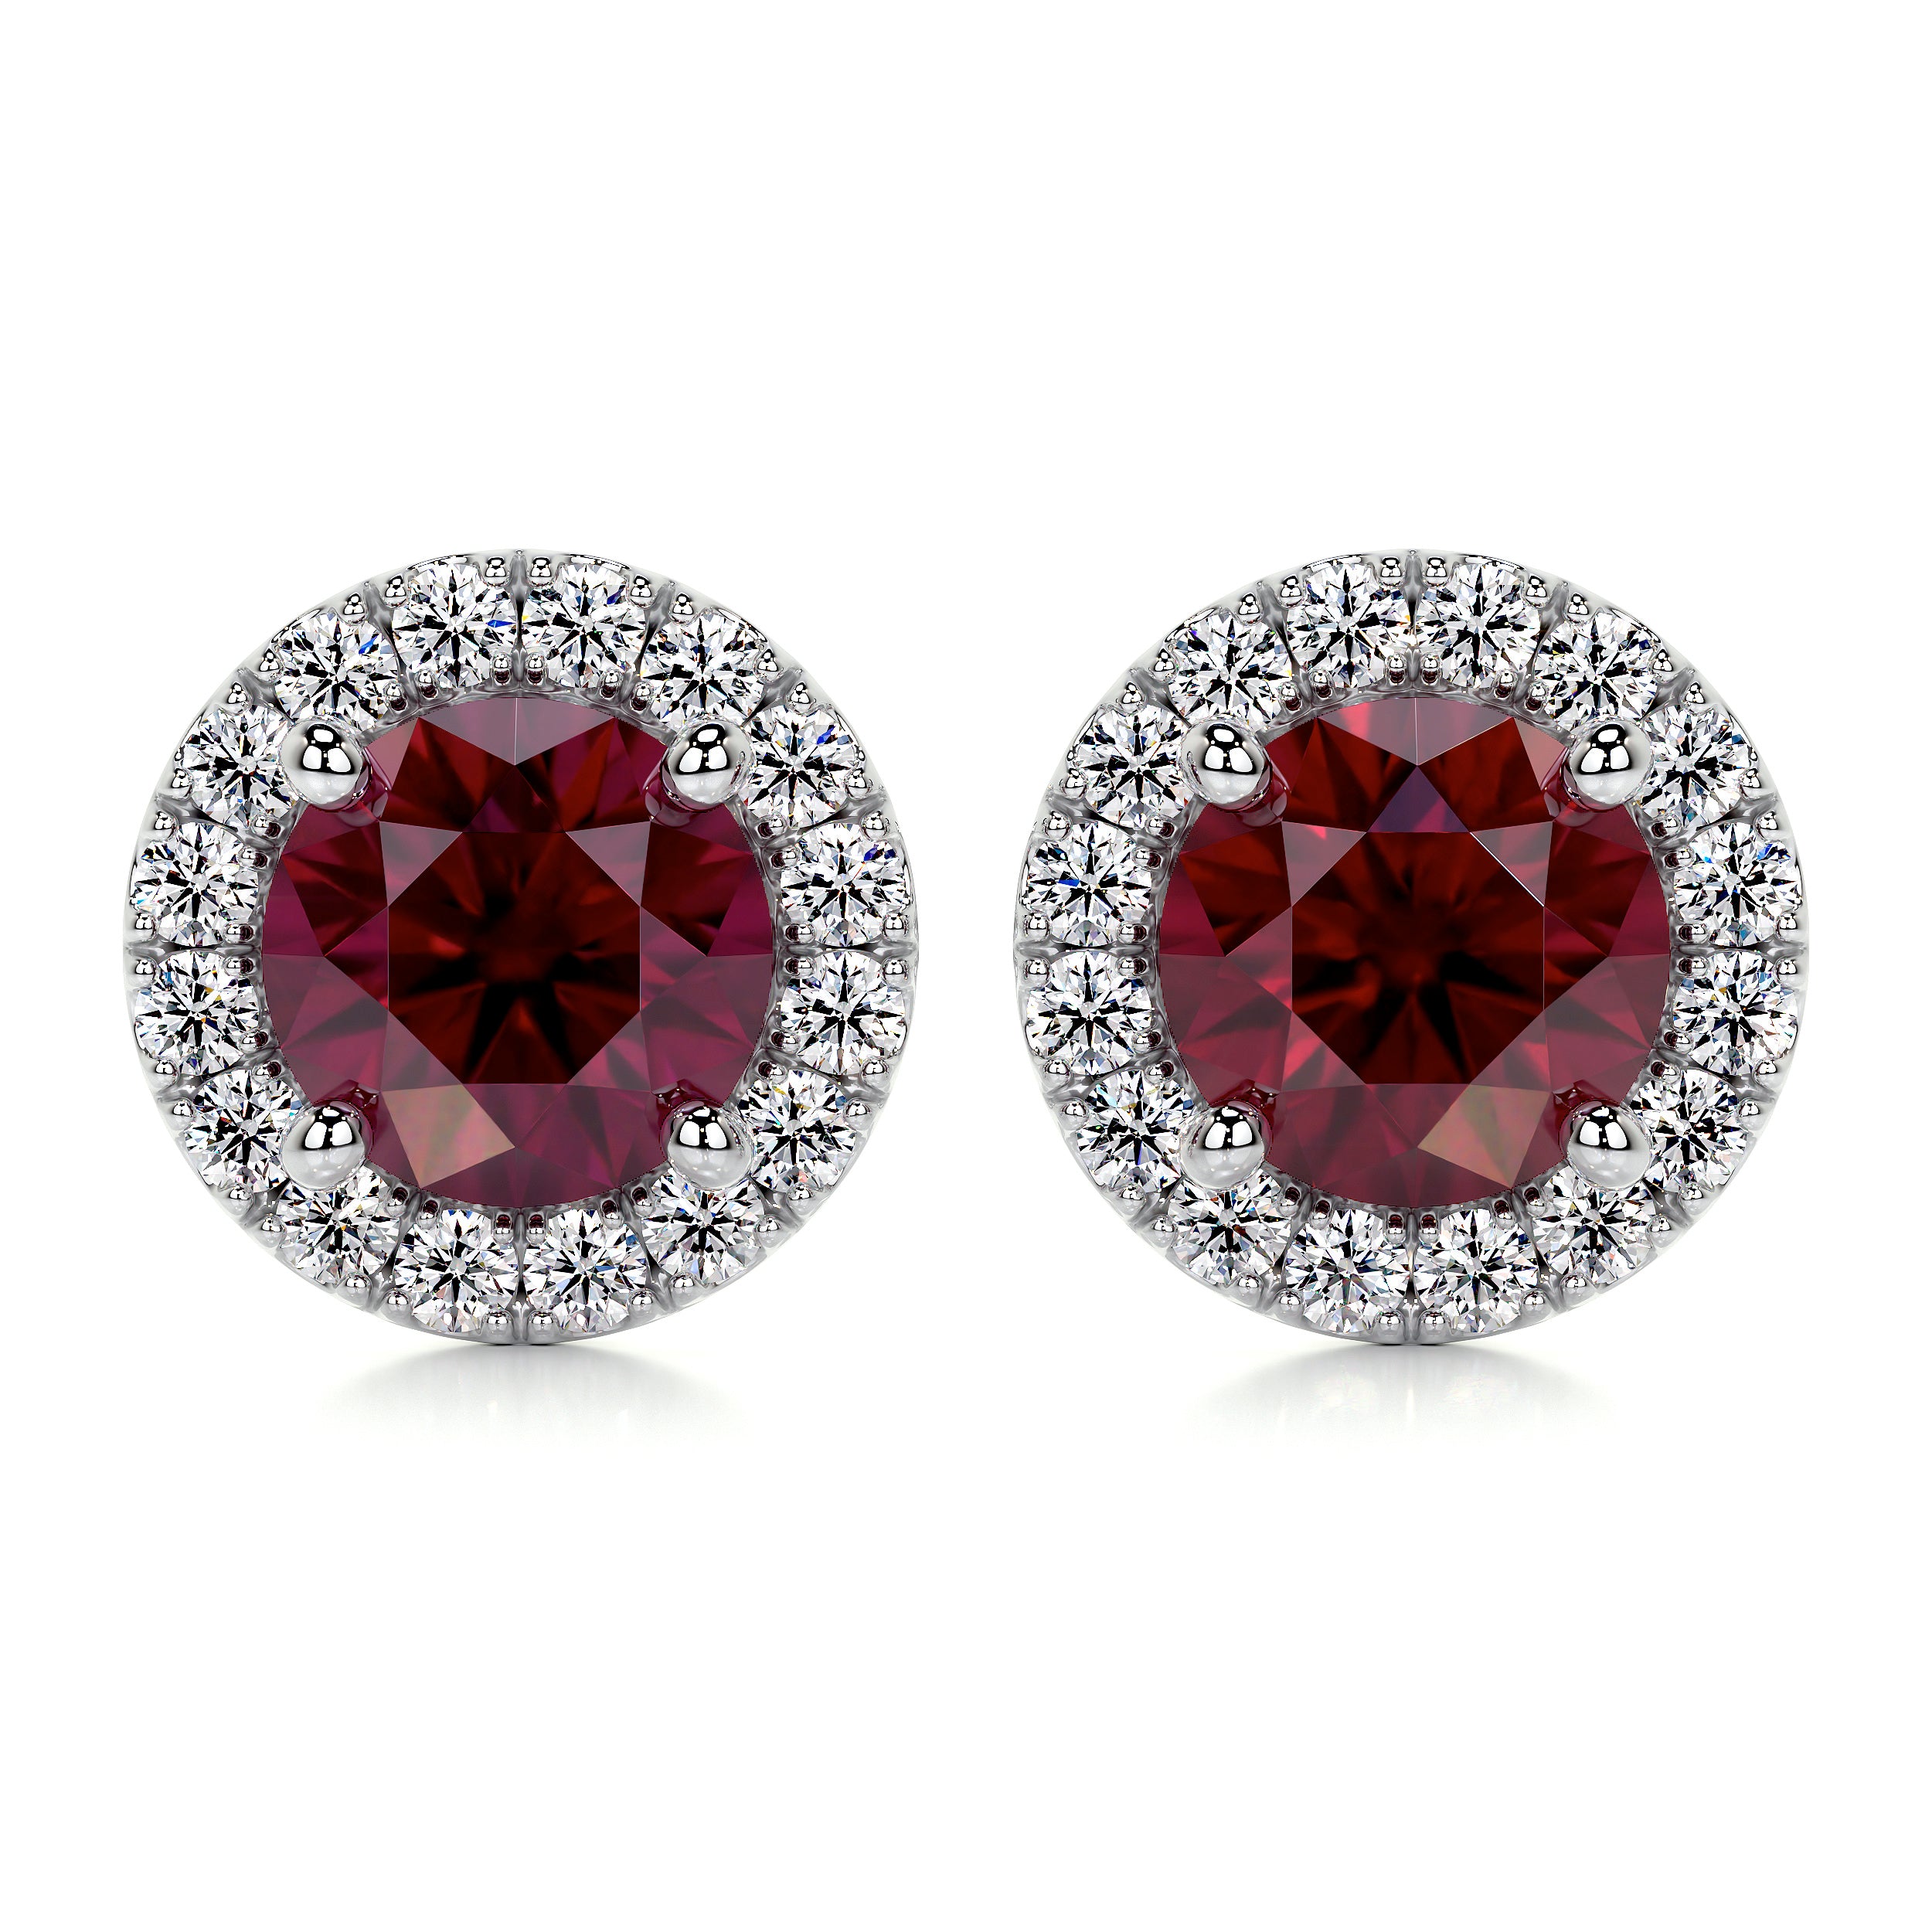 Erica Gemstones & Diamonds Earrings   (2.30 Carat) - 18K White Gold